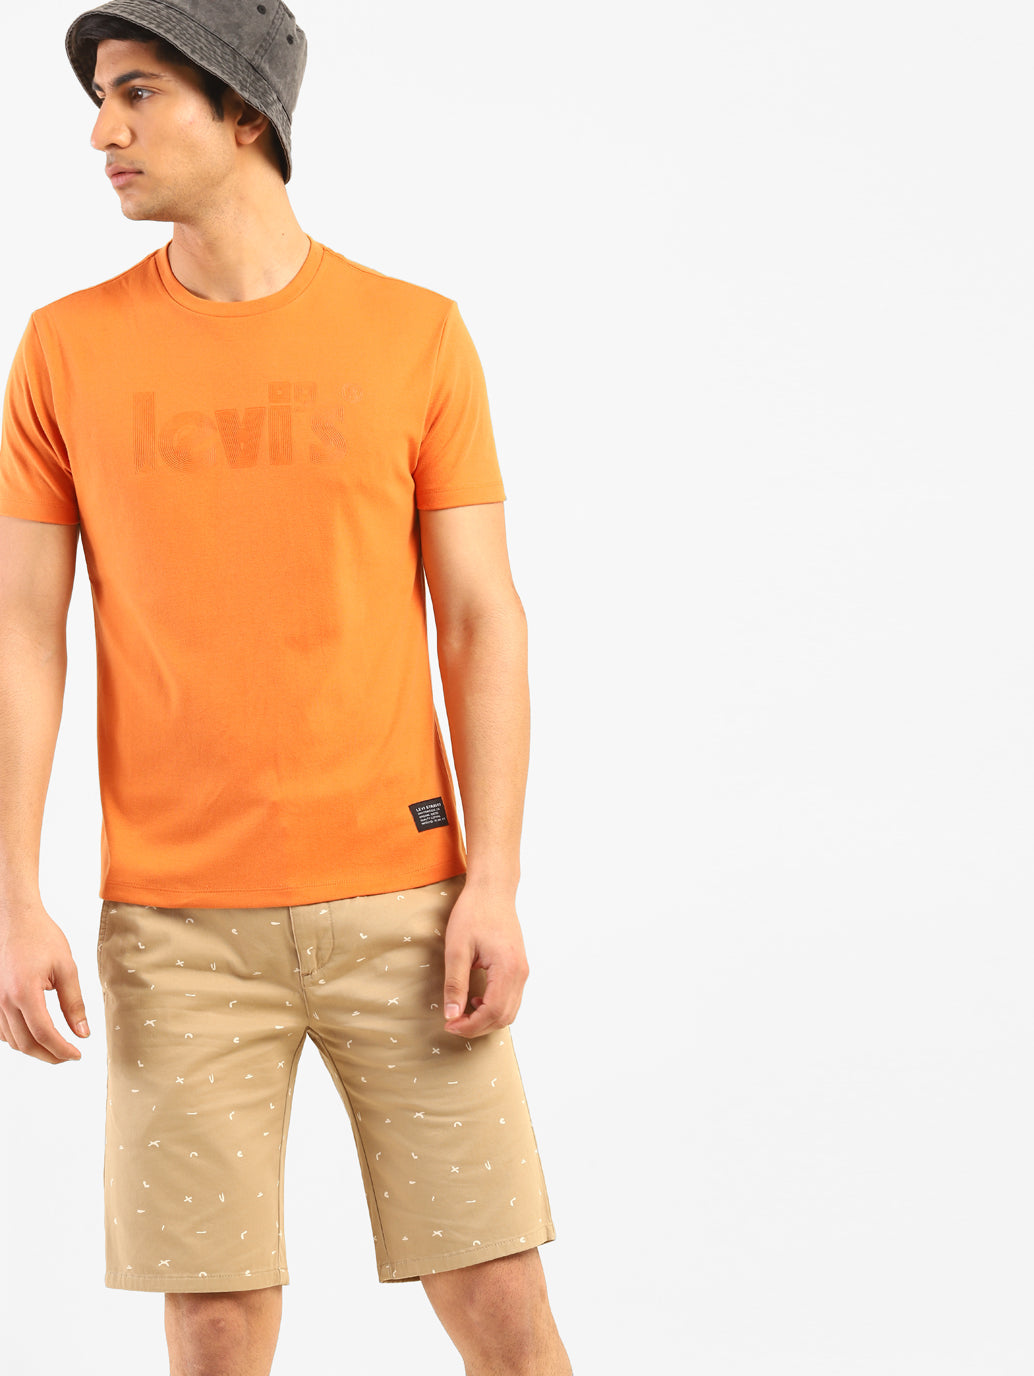 Men's Clementine Tangerine Short Sleeve Crew Neck Casual Tee Shirt Tops